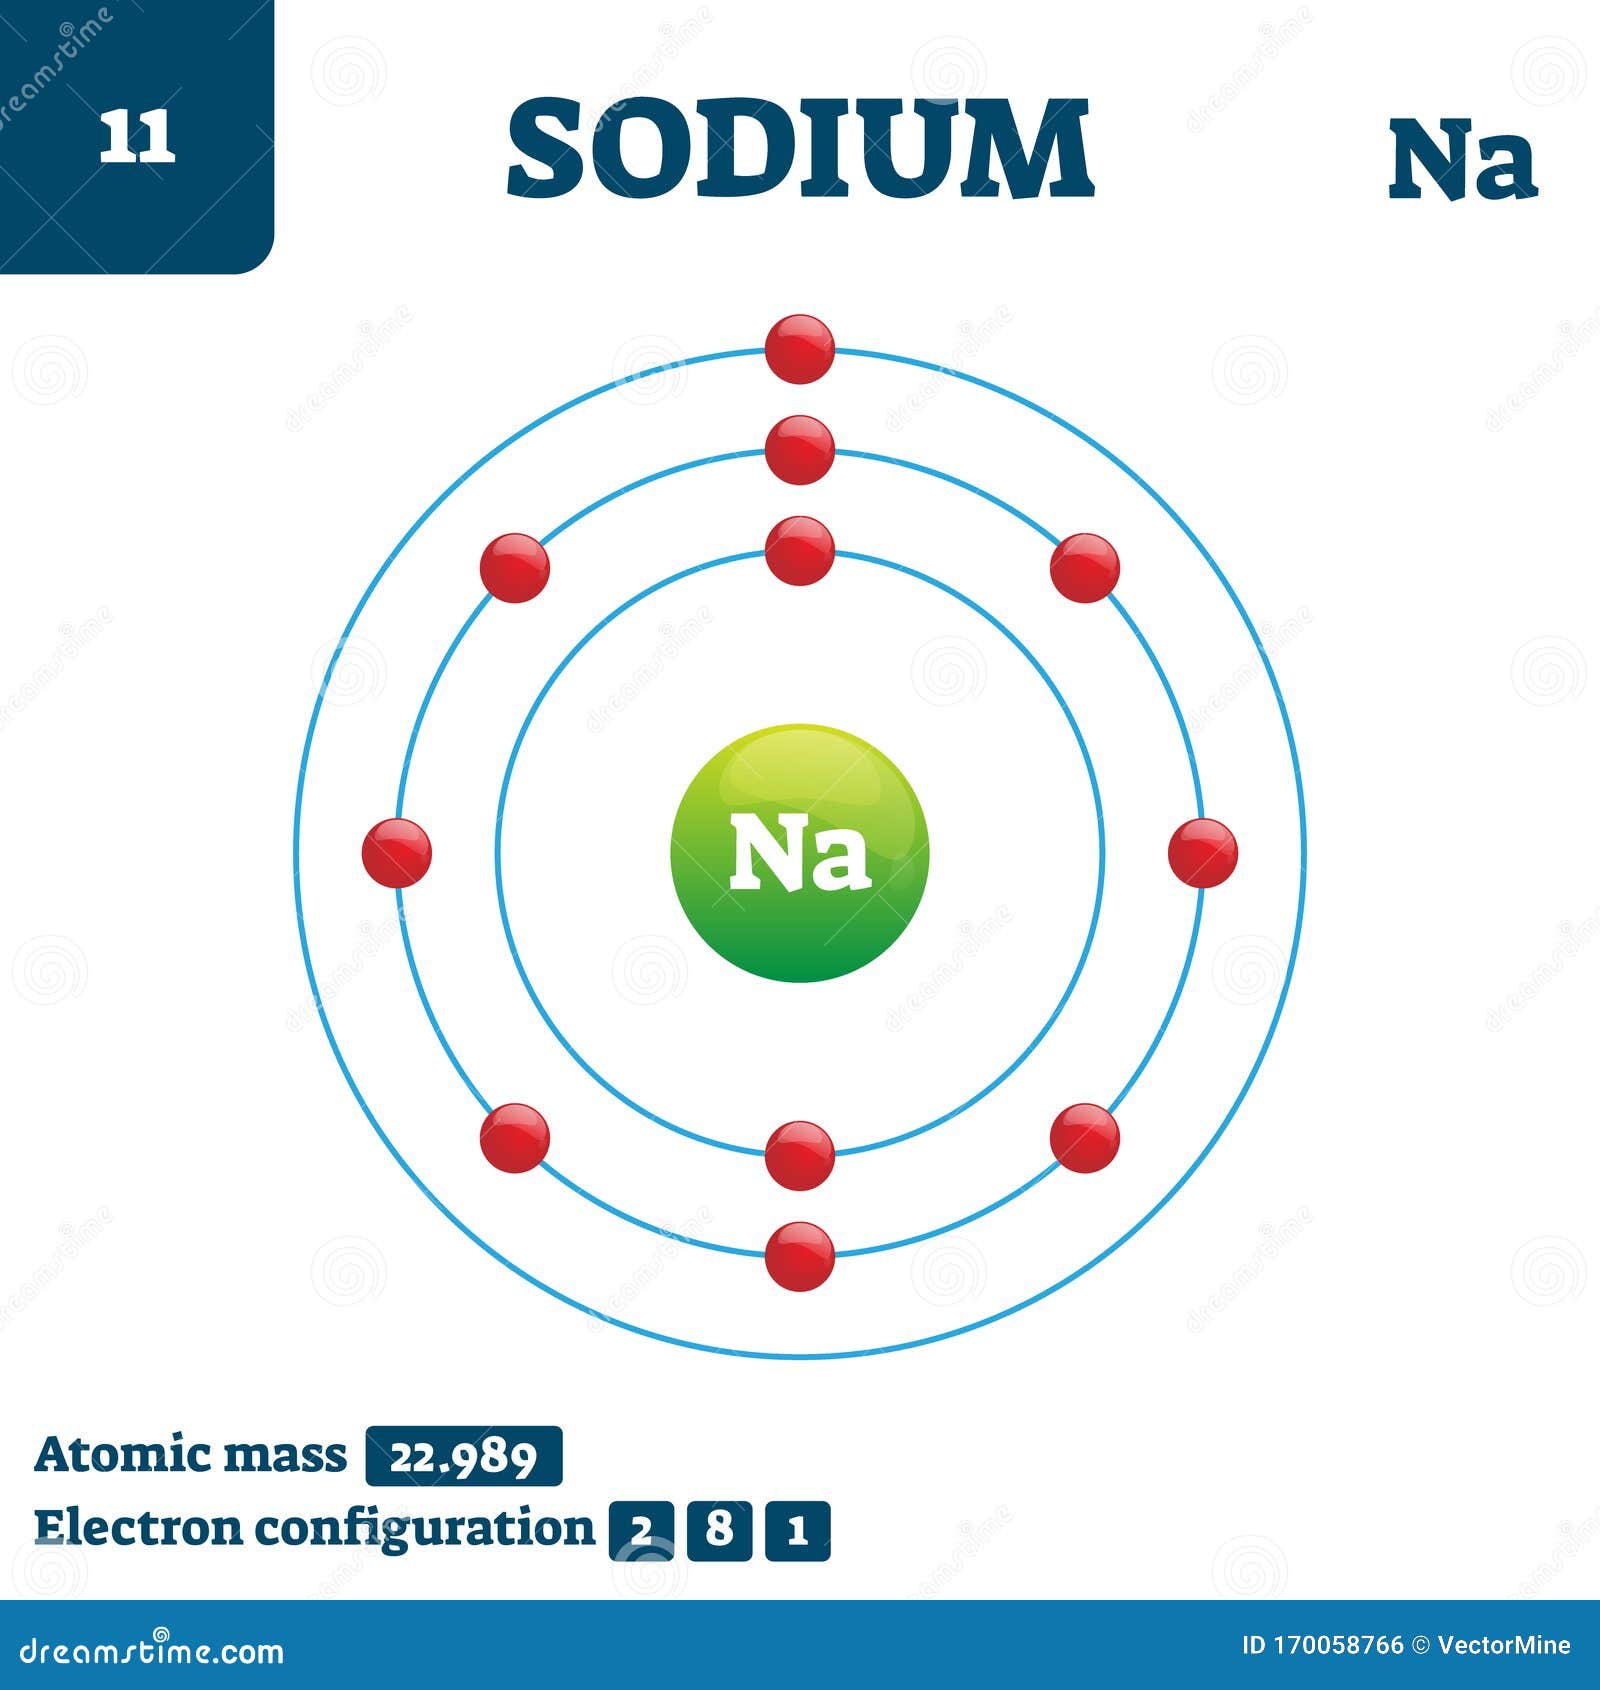 sodium atom